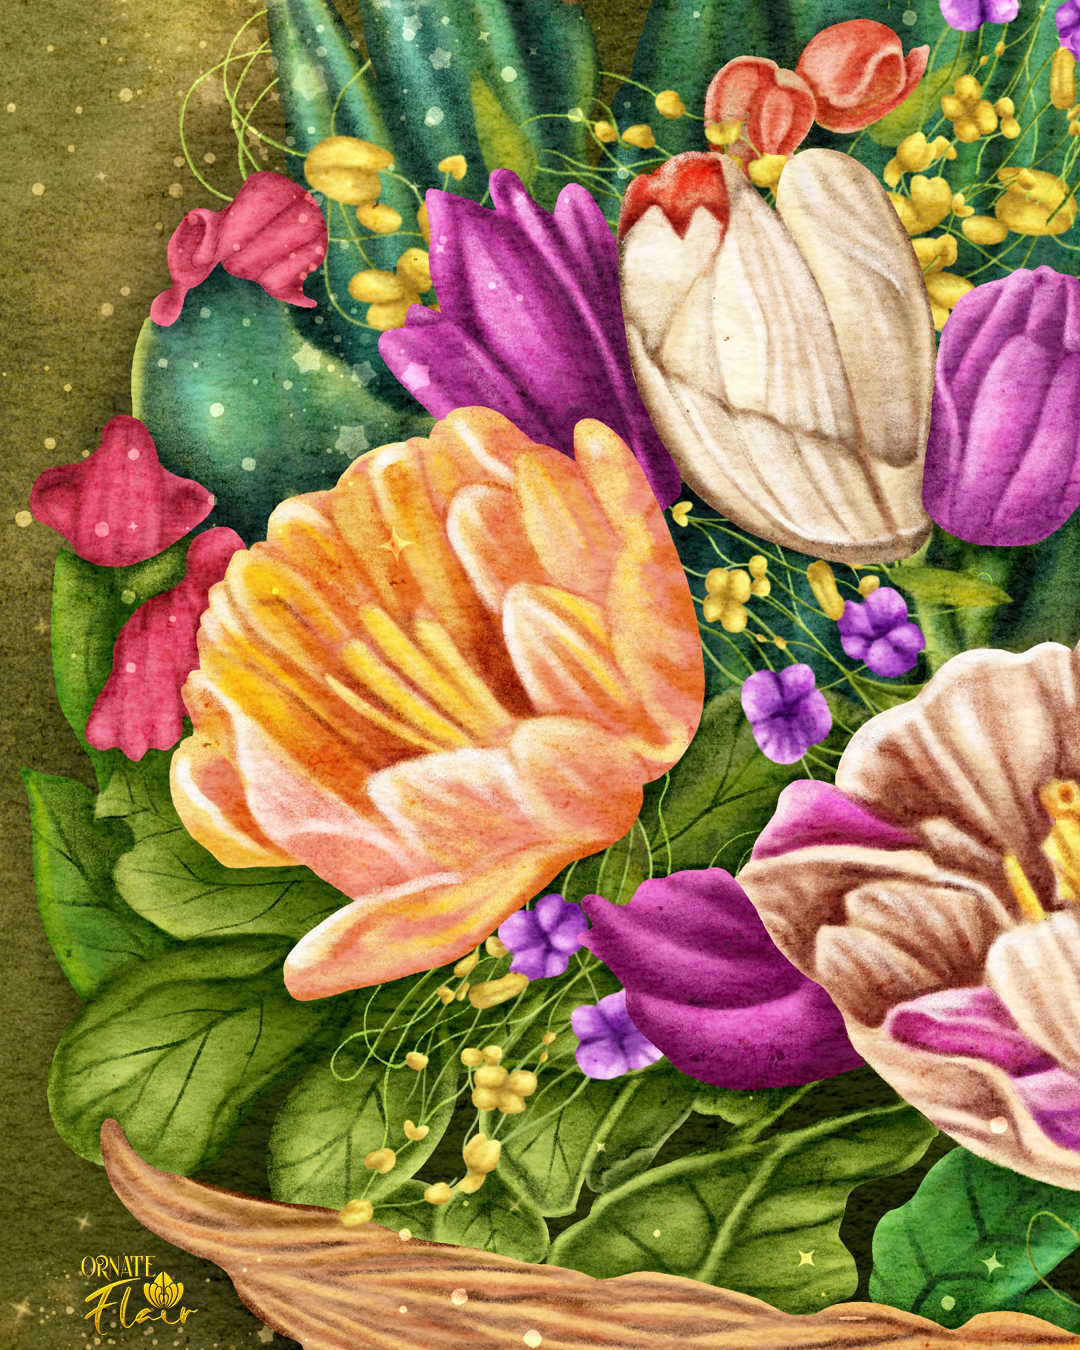 Easter Basket Detail 1, Basket of Flowers, Basket of Spring Flowers, Floral art, floral illustration, Easter, Easter illustrations, Easter art for licensing, ornateflair, Lesley Smitheringale